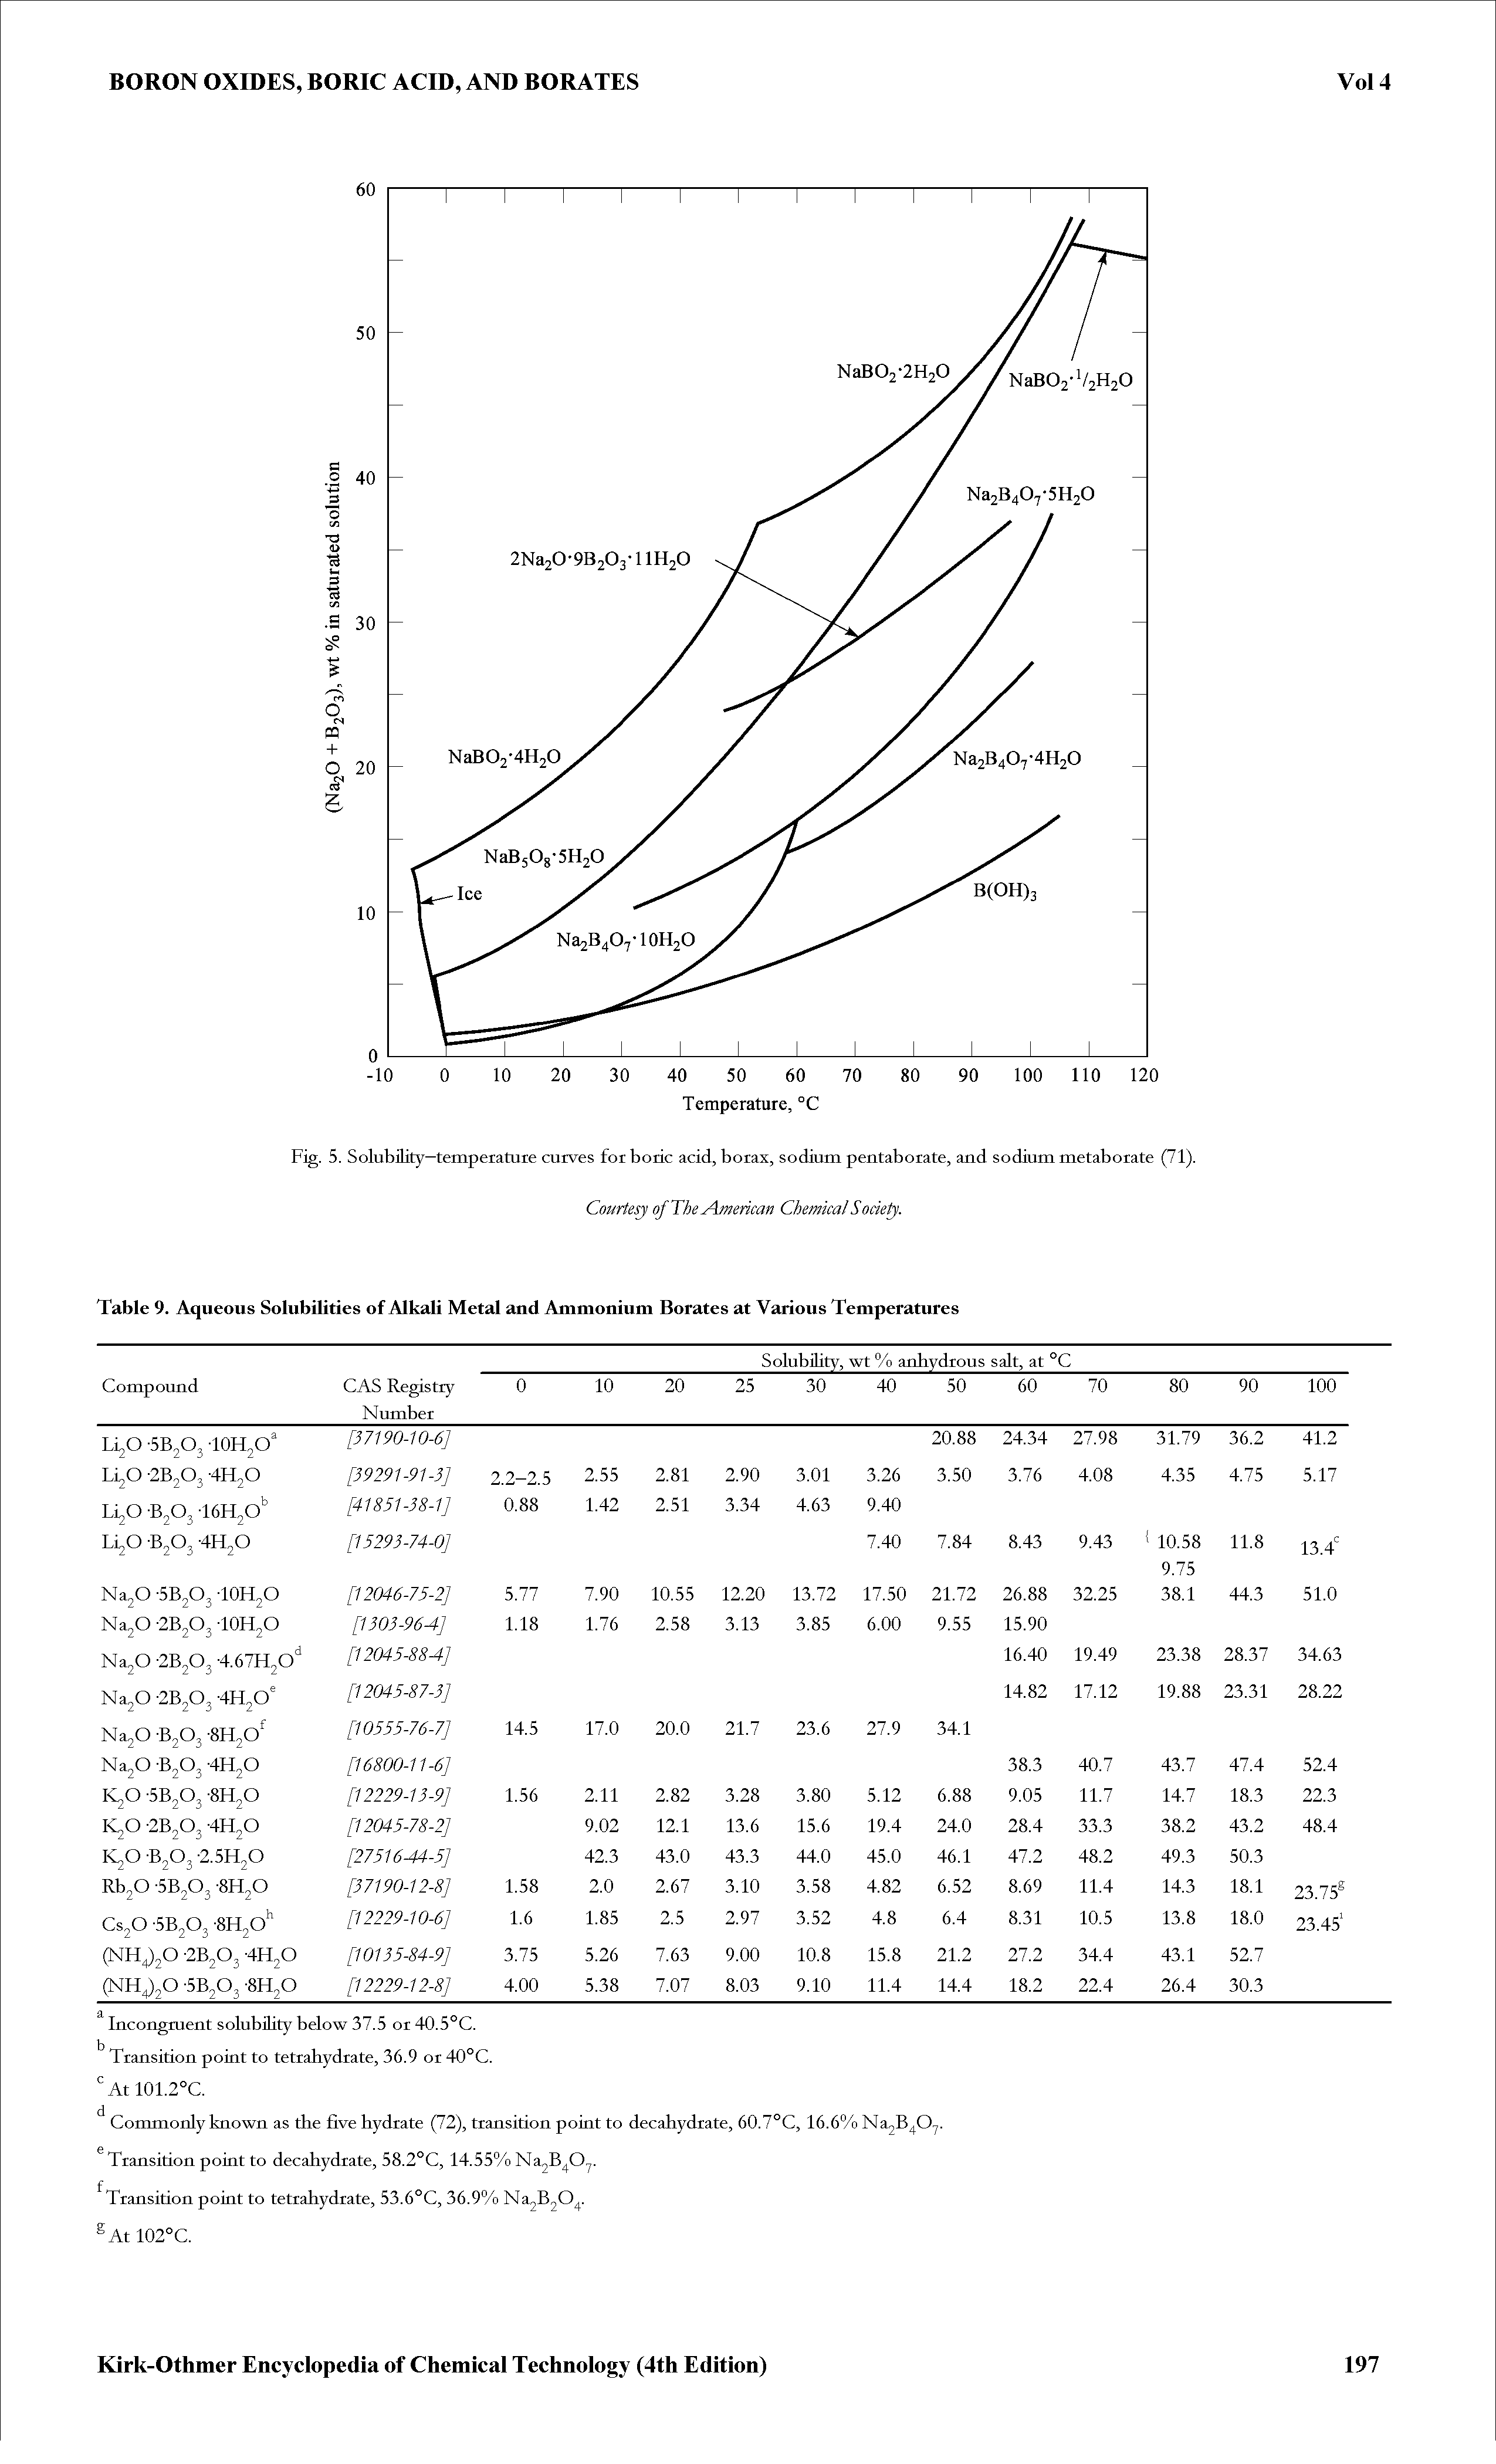 Fig. 5. Solubility—temperature curves for boric acid, borax, sodium pentaborate, and sodium metaborate (71).